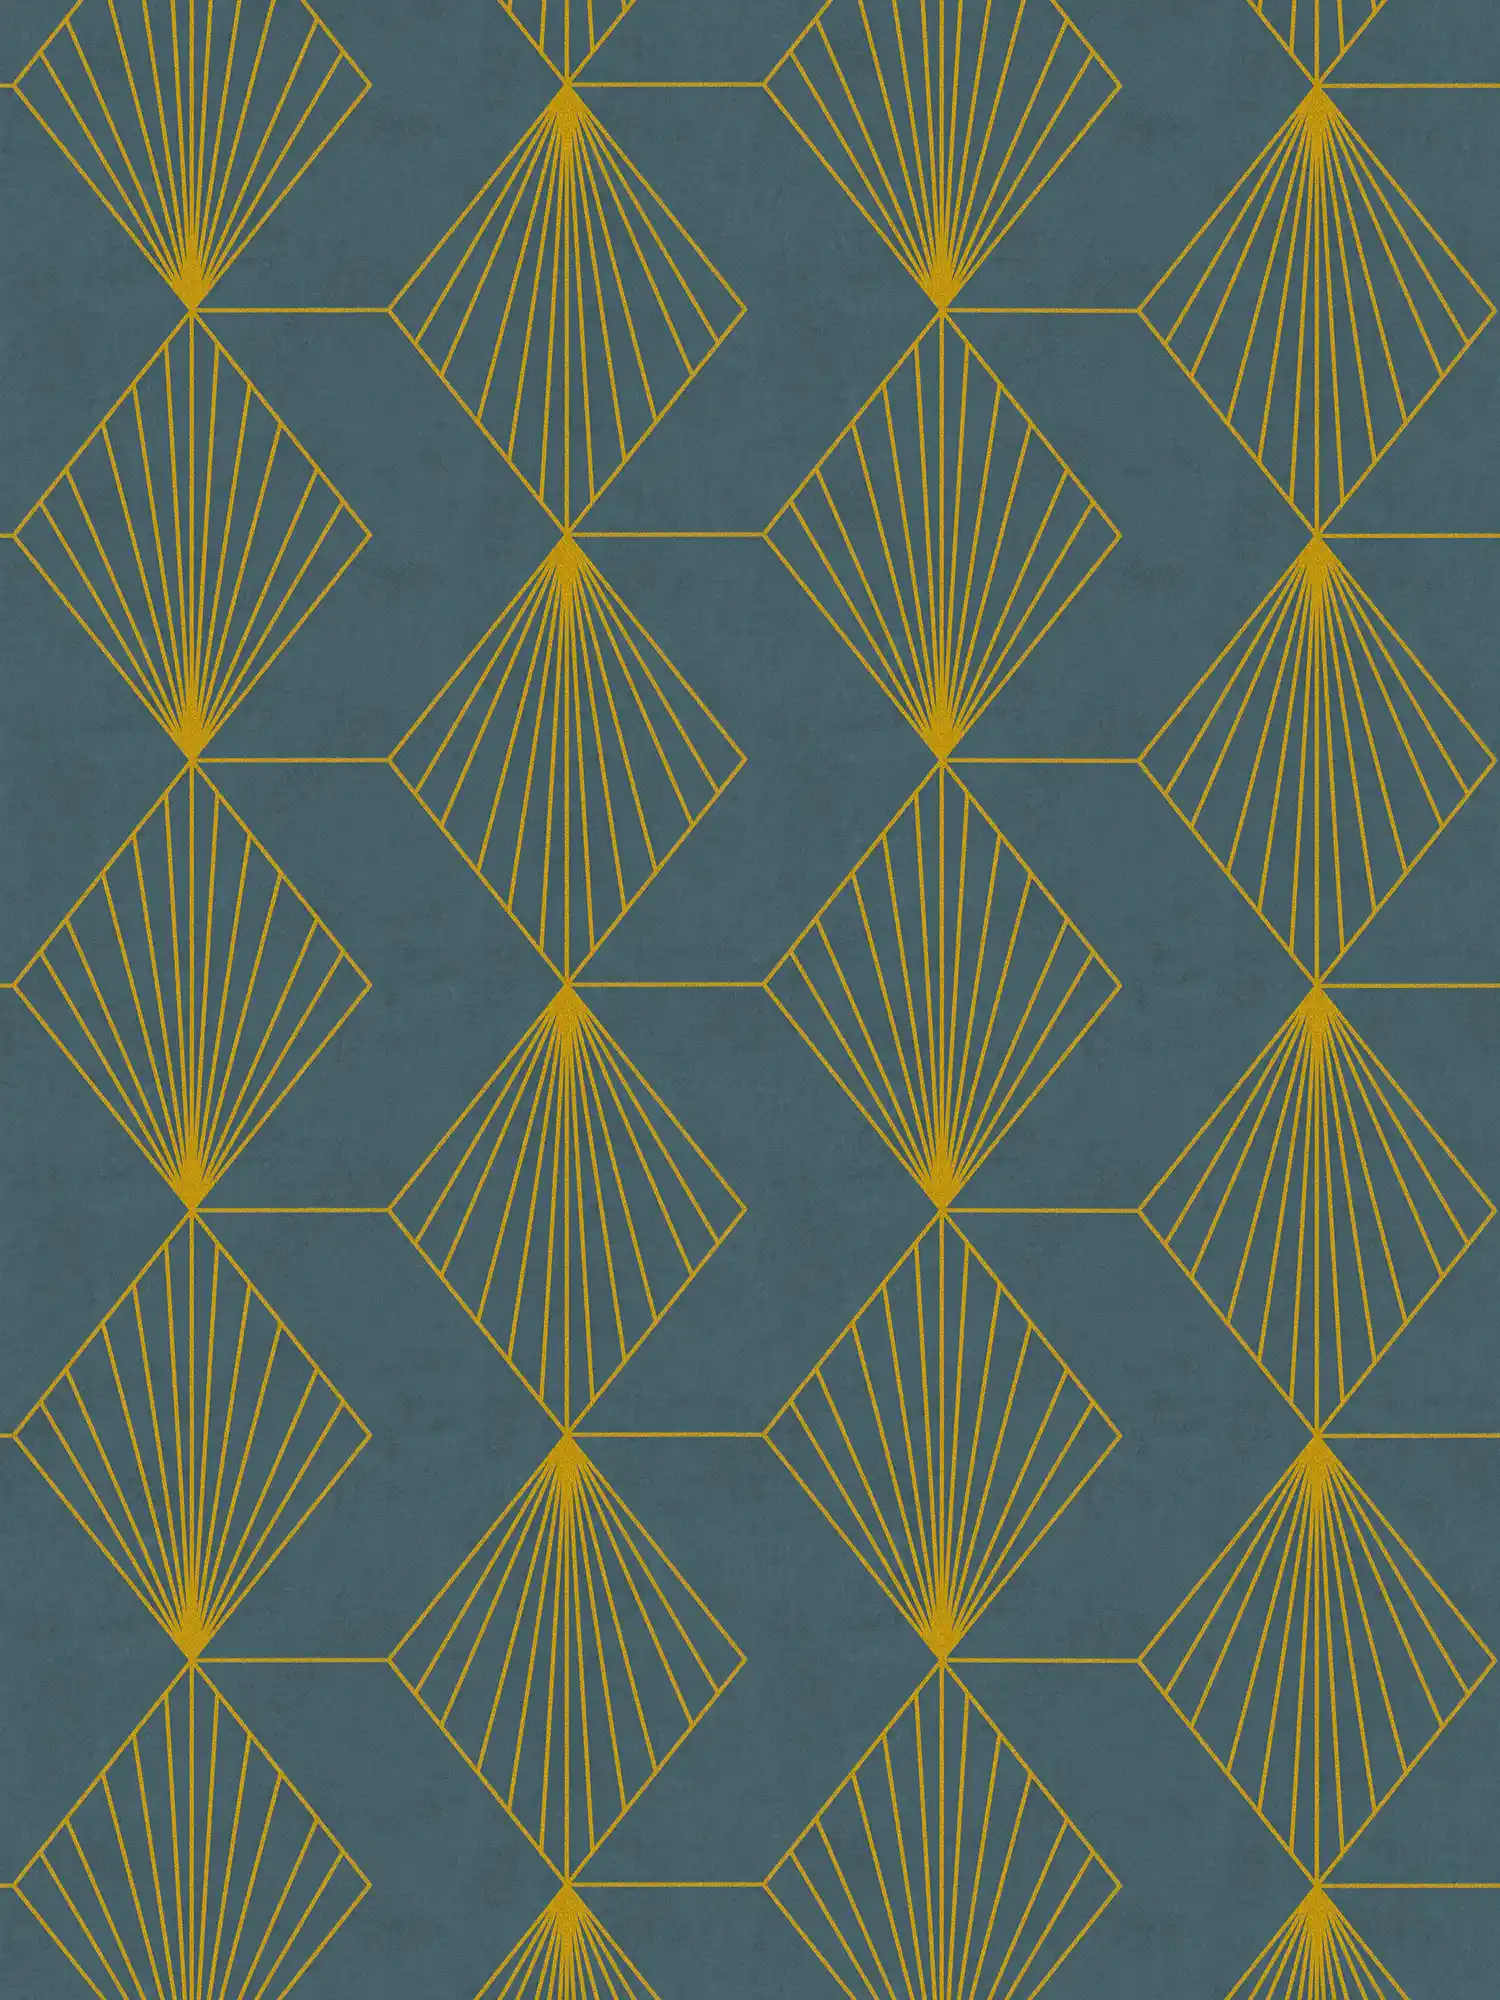 Design vliesbehang met grafisch patroon in Art Deco stijl - petrol, goud
